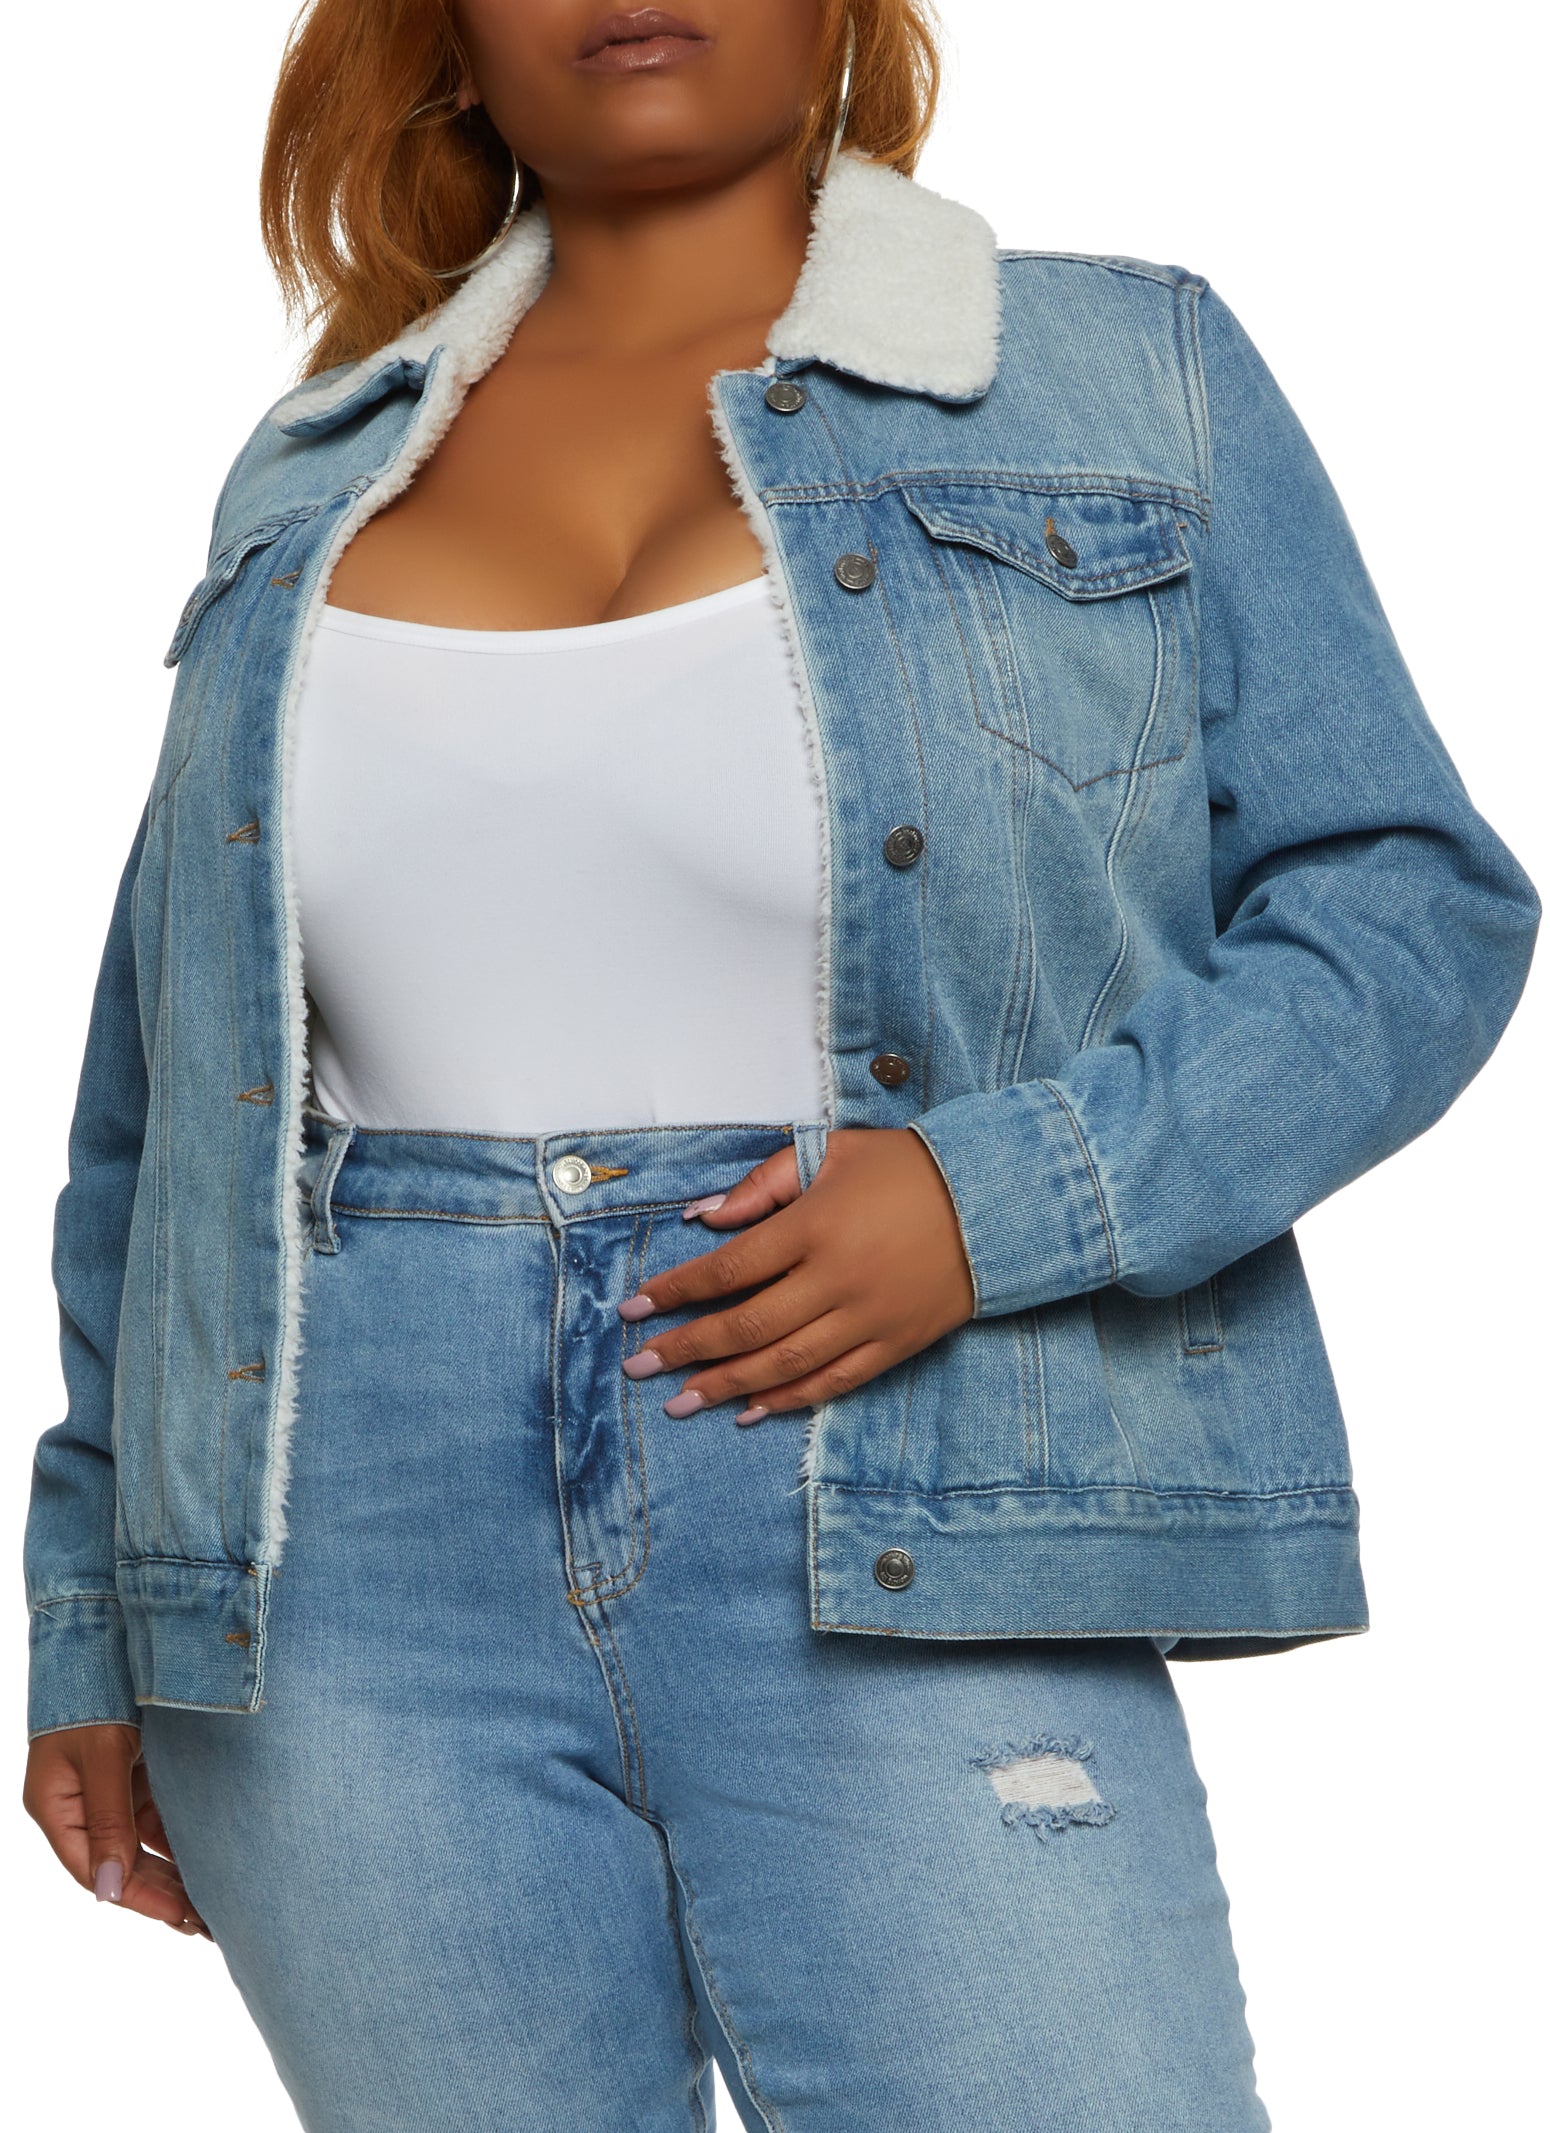 Unique Bargains Women's Plus Size Frayed Denim Jacket